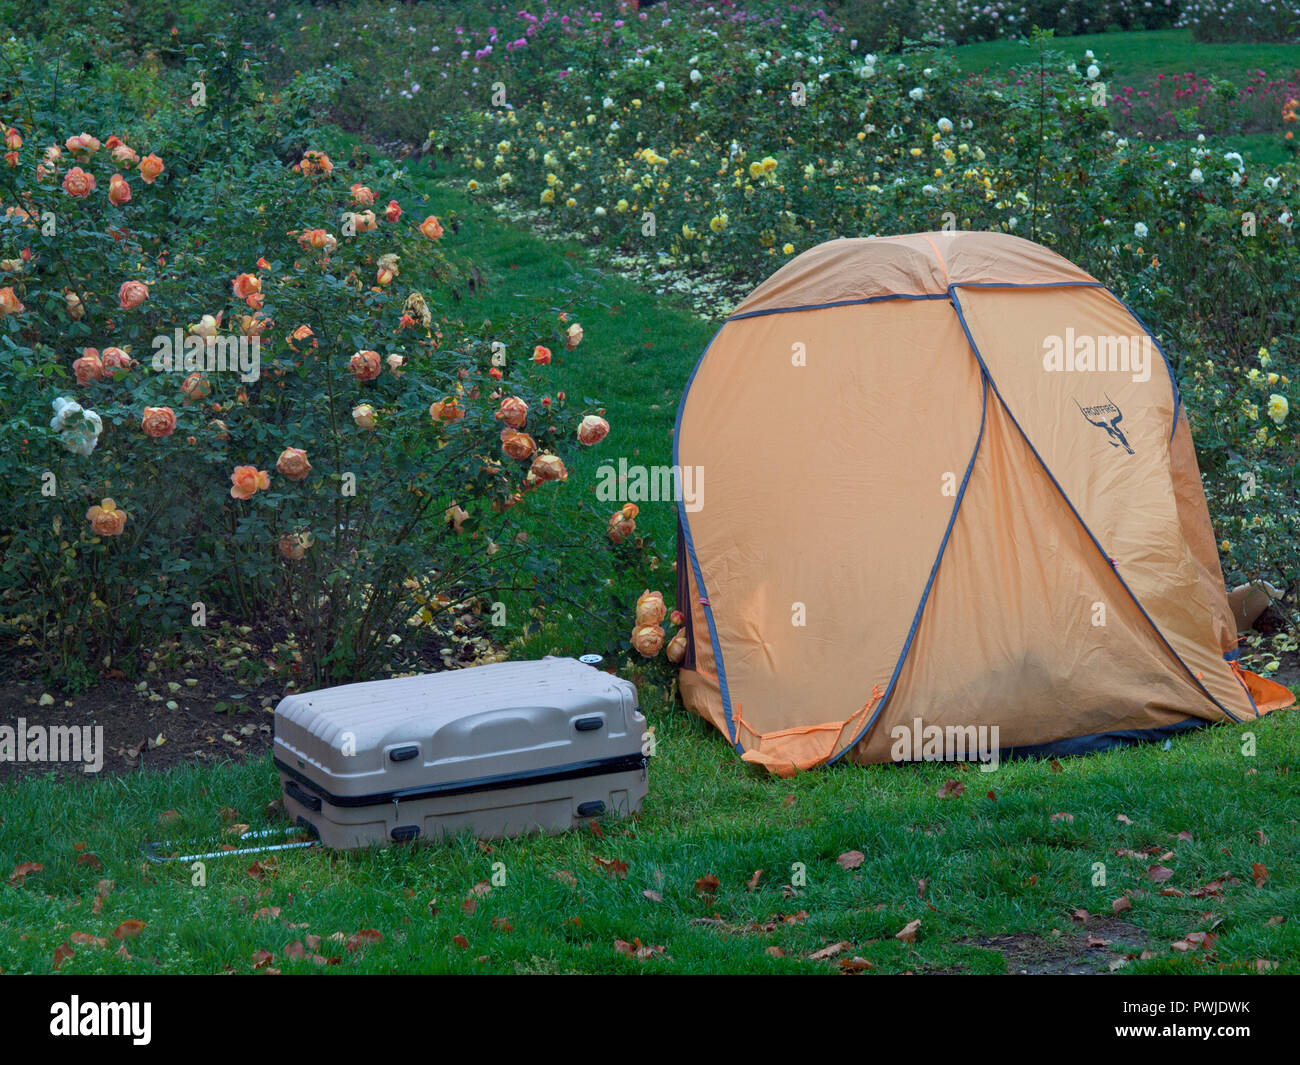 Campeggio senza casa immagini e fotografie stock ad alta risoluzione - Alamy